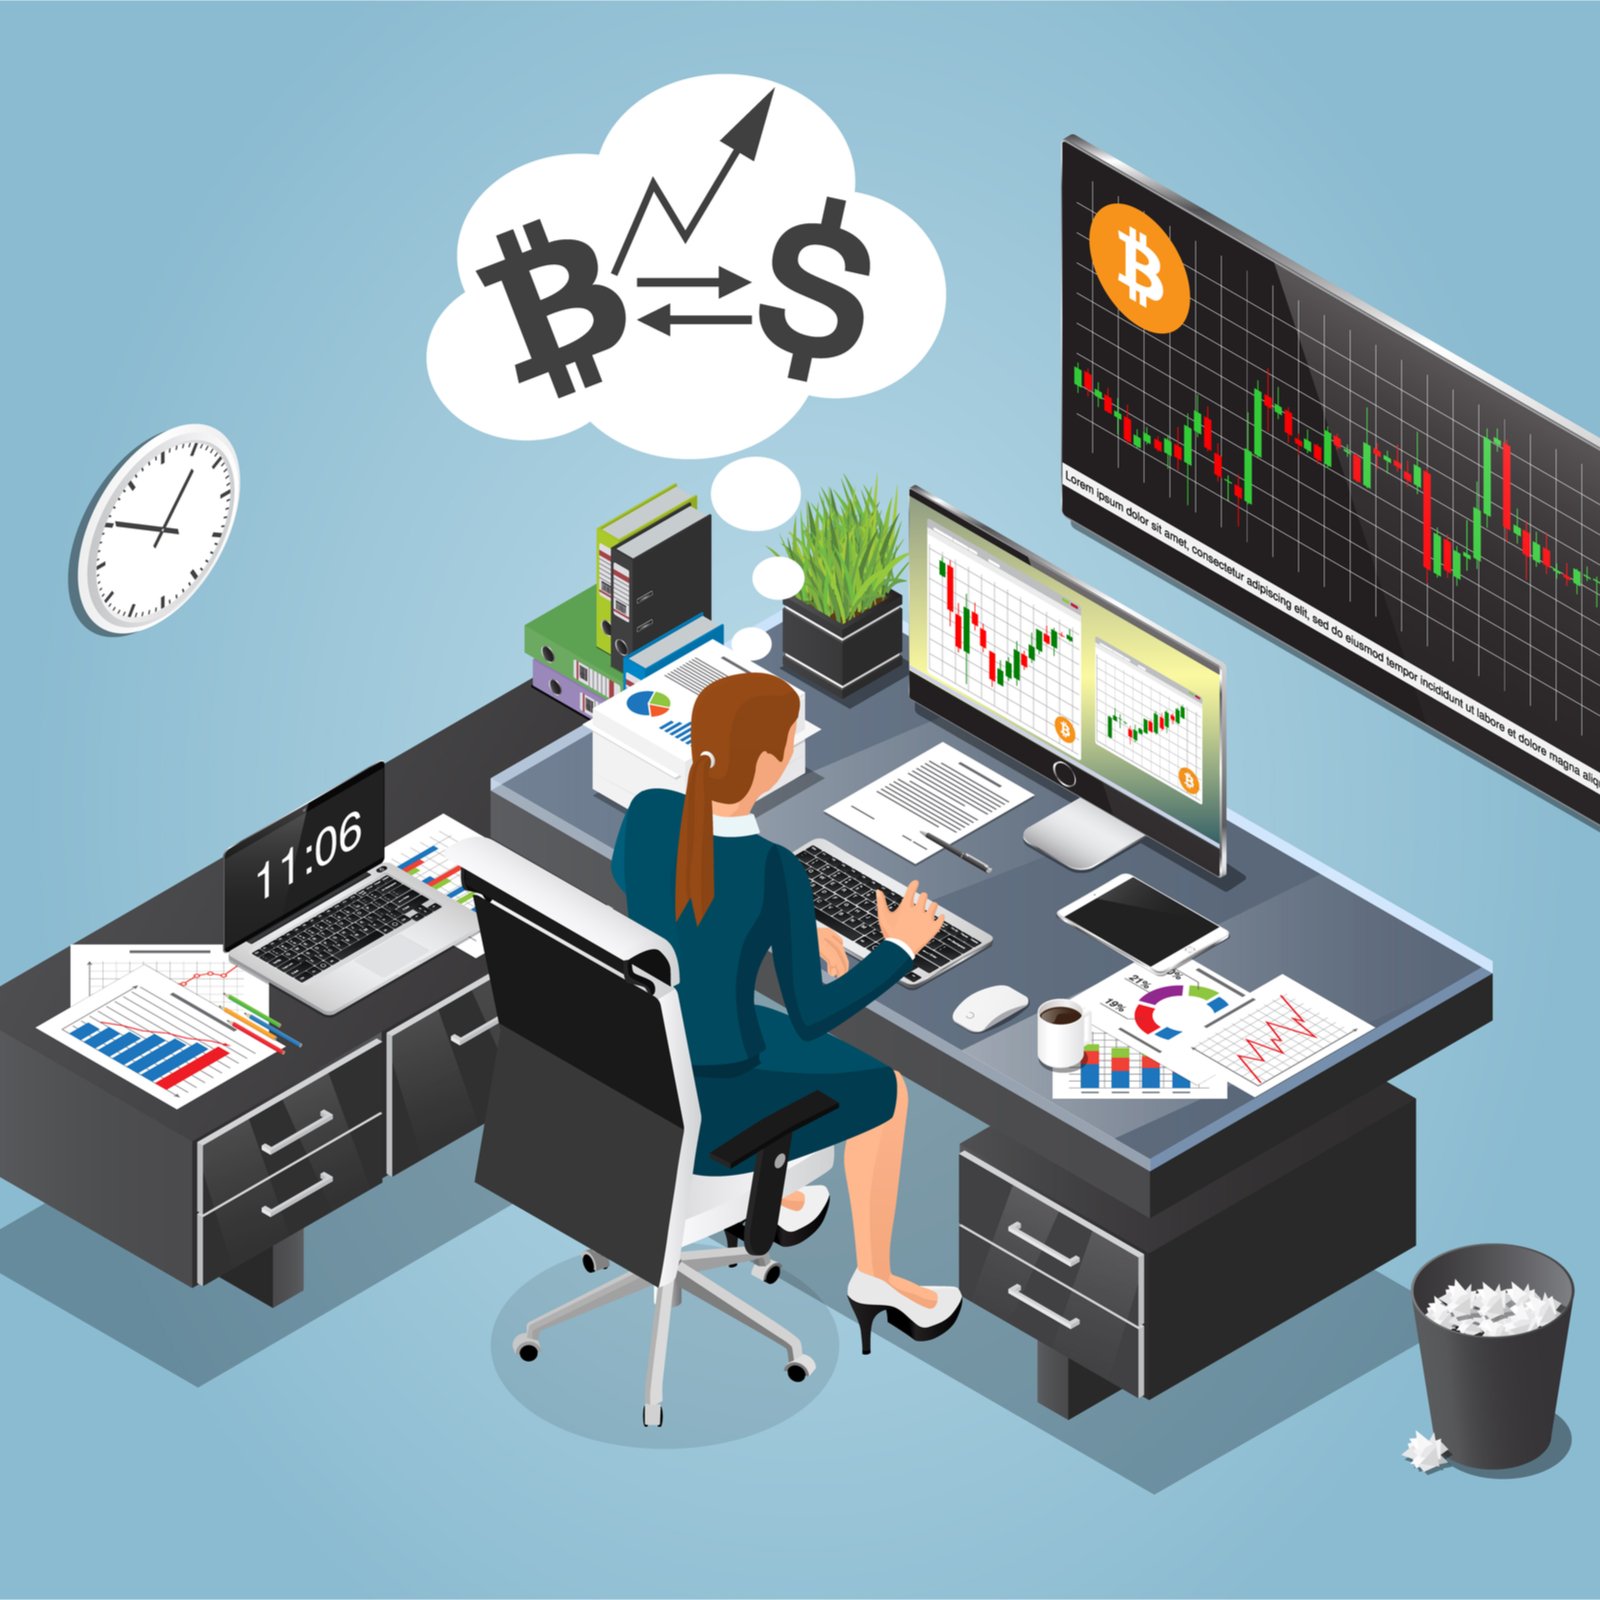 lenovo btc offerta di monitoraggio bitcoin valore atteso 2021